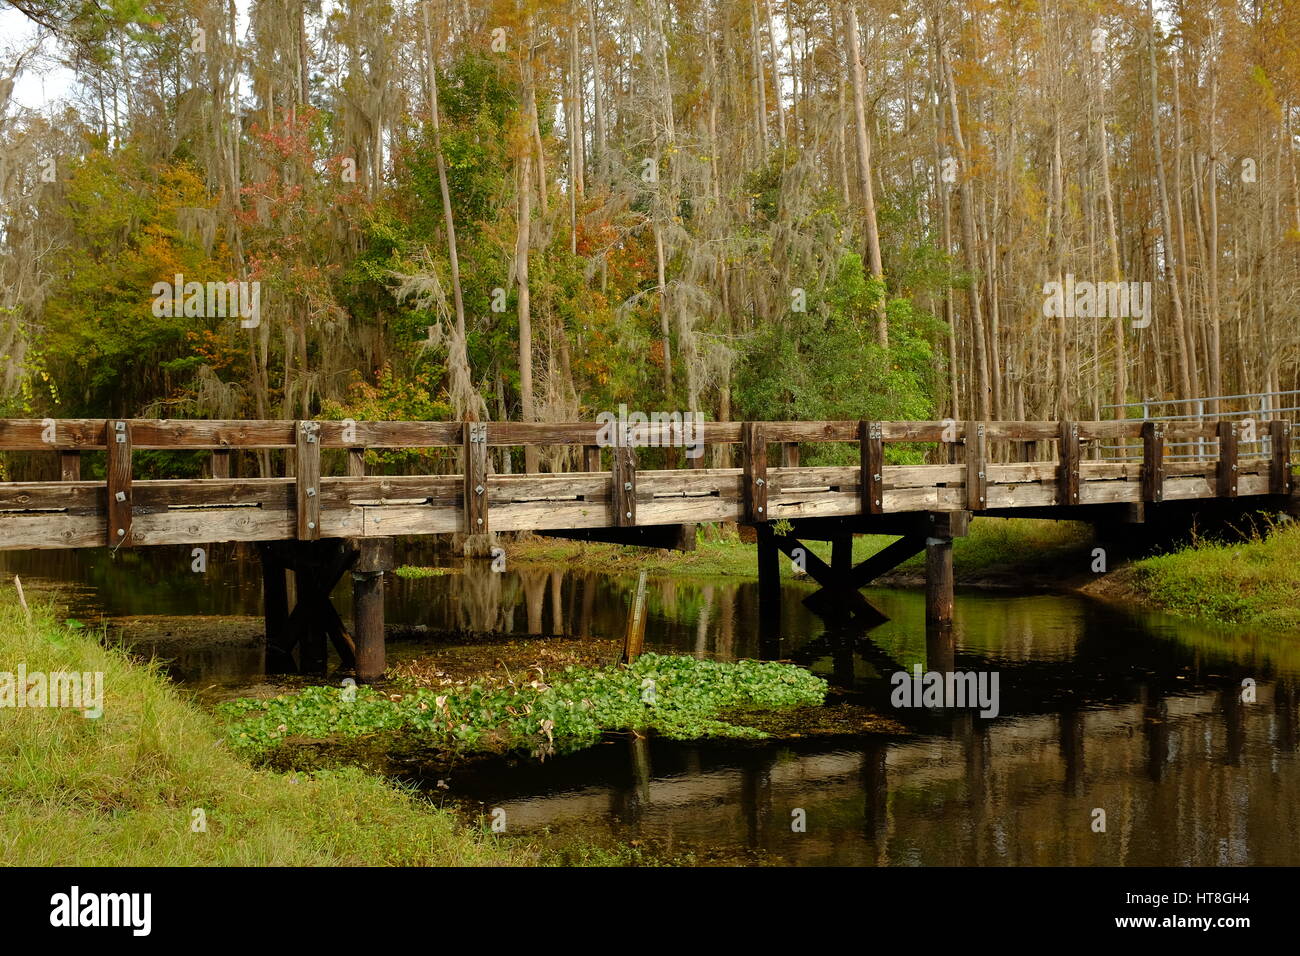 Una pasarela con barandas de madera se refleja en las tranquilas aguas de Shingle Creek. Grupos de vegetación flotante y un medidor de profundidad de agua están por debajo. Foto de stock